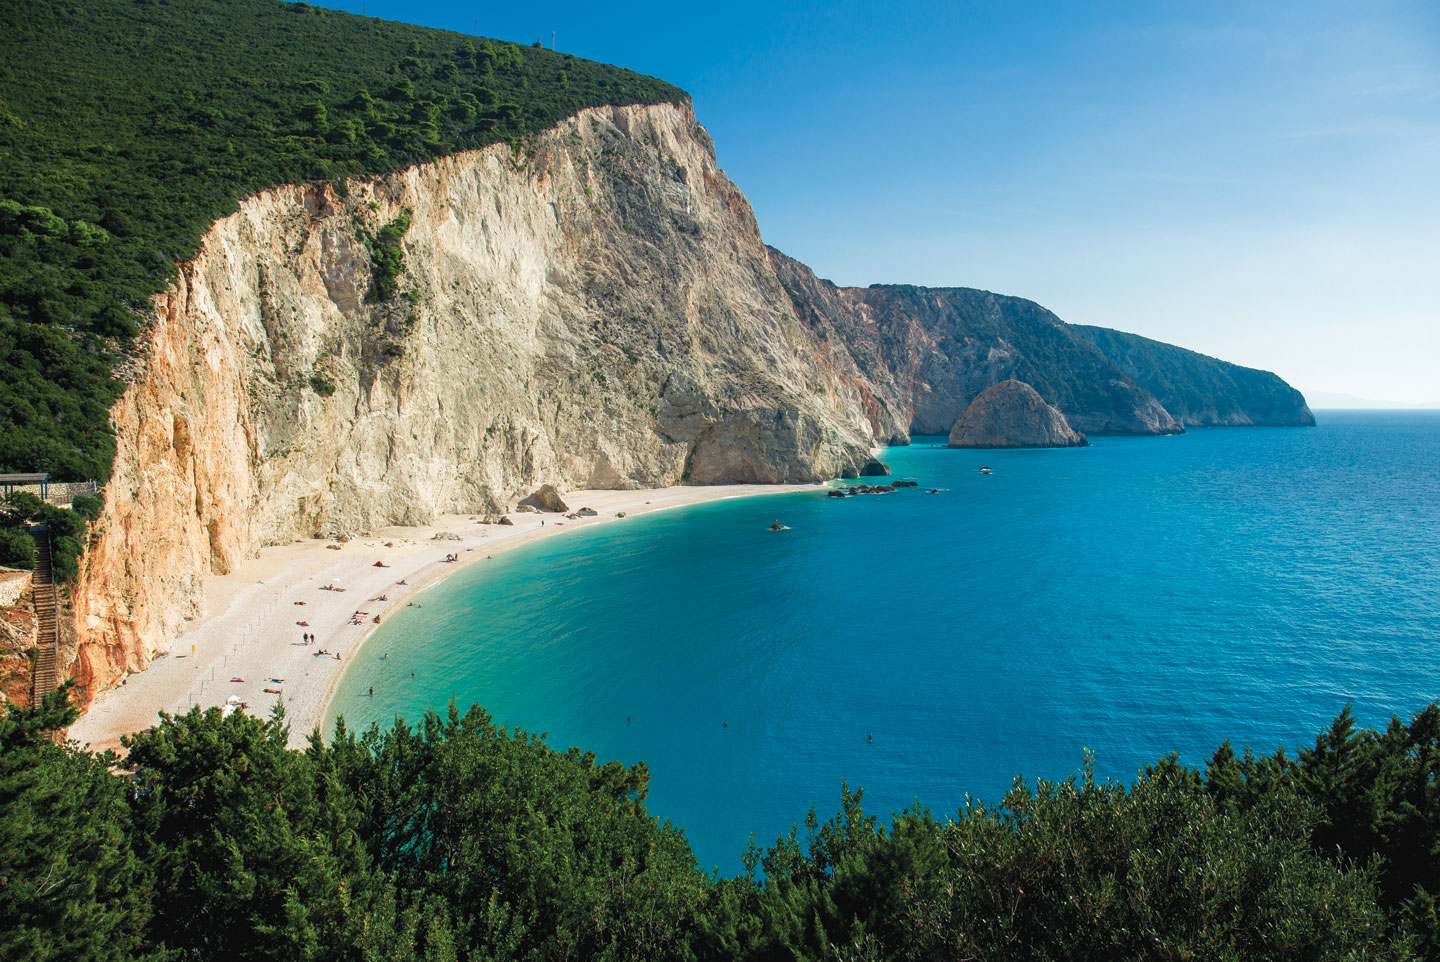 Πόρτο Κατσίκι, η εντυπωσιακή παραλία της Λευκάδας | Lefkada Slow Guide